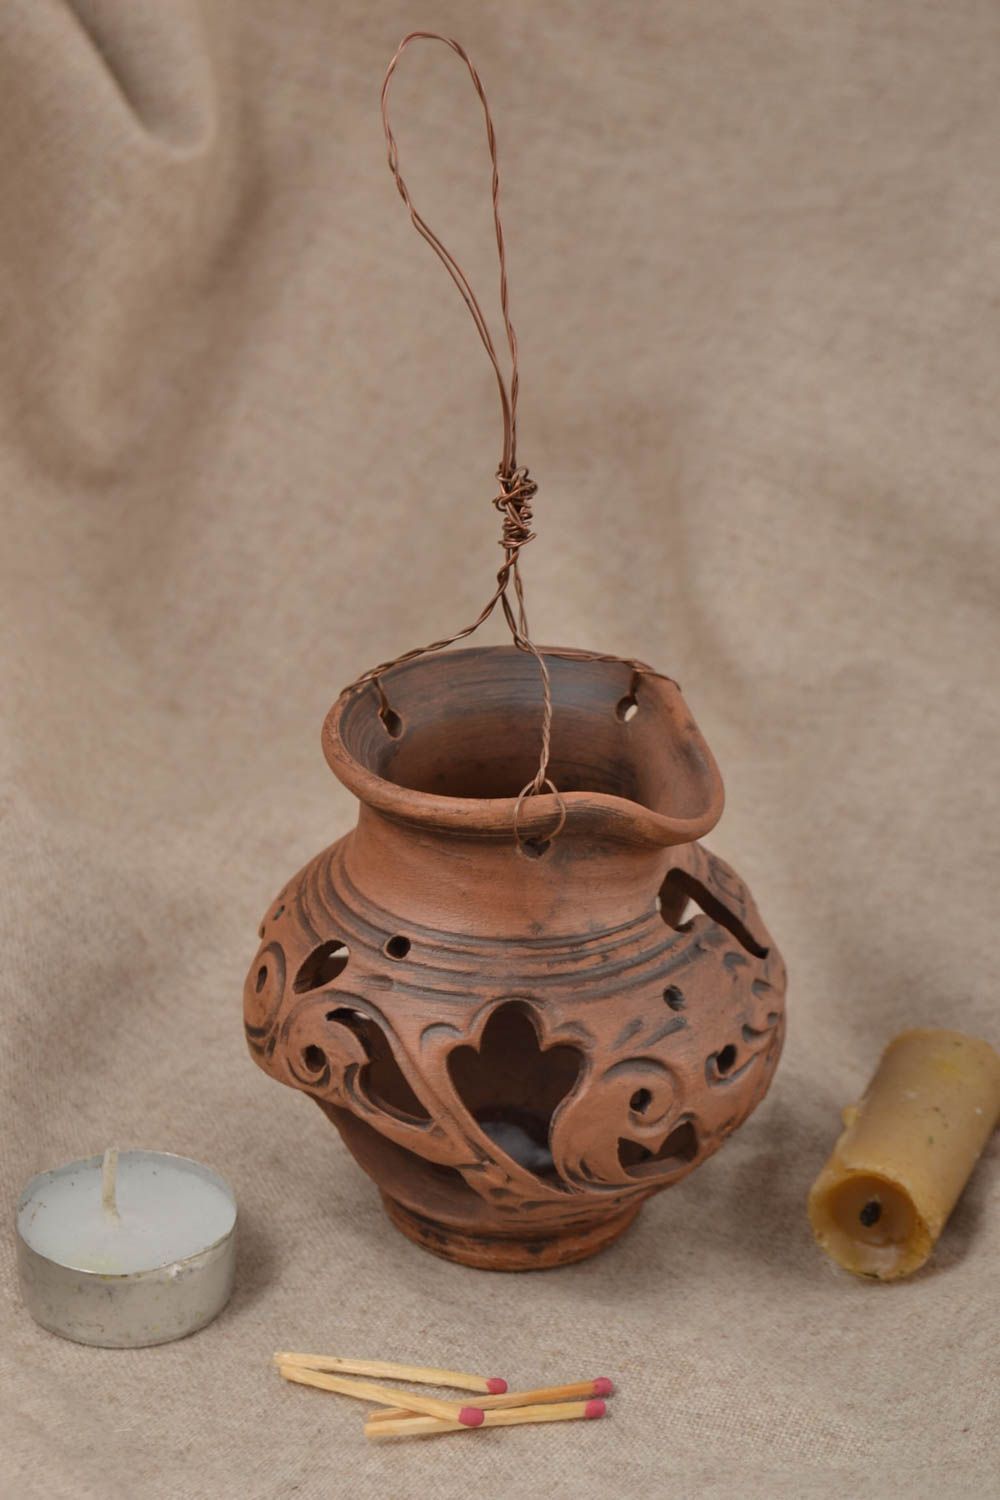 Керамический светильник подарок ручной работы подсвечник из глины на проволоке фото 1